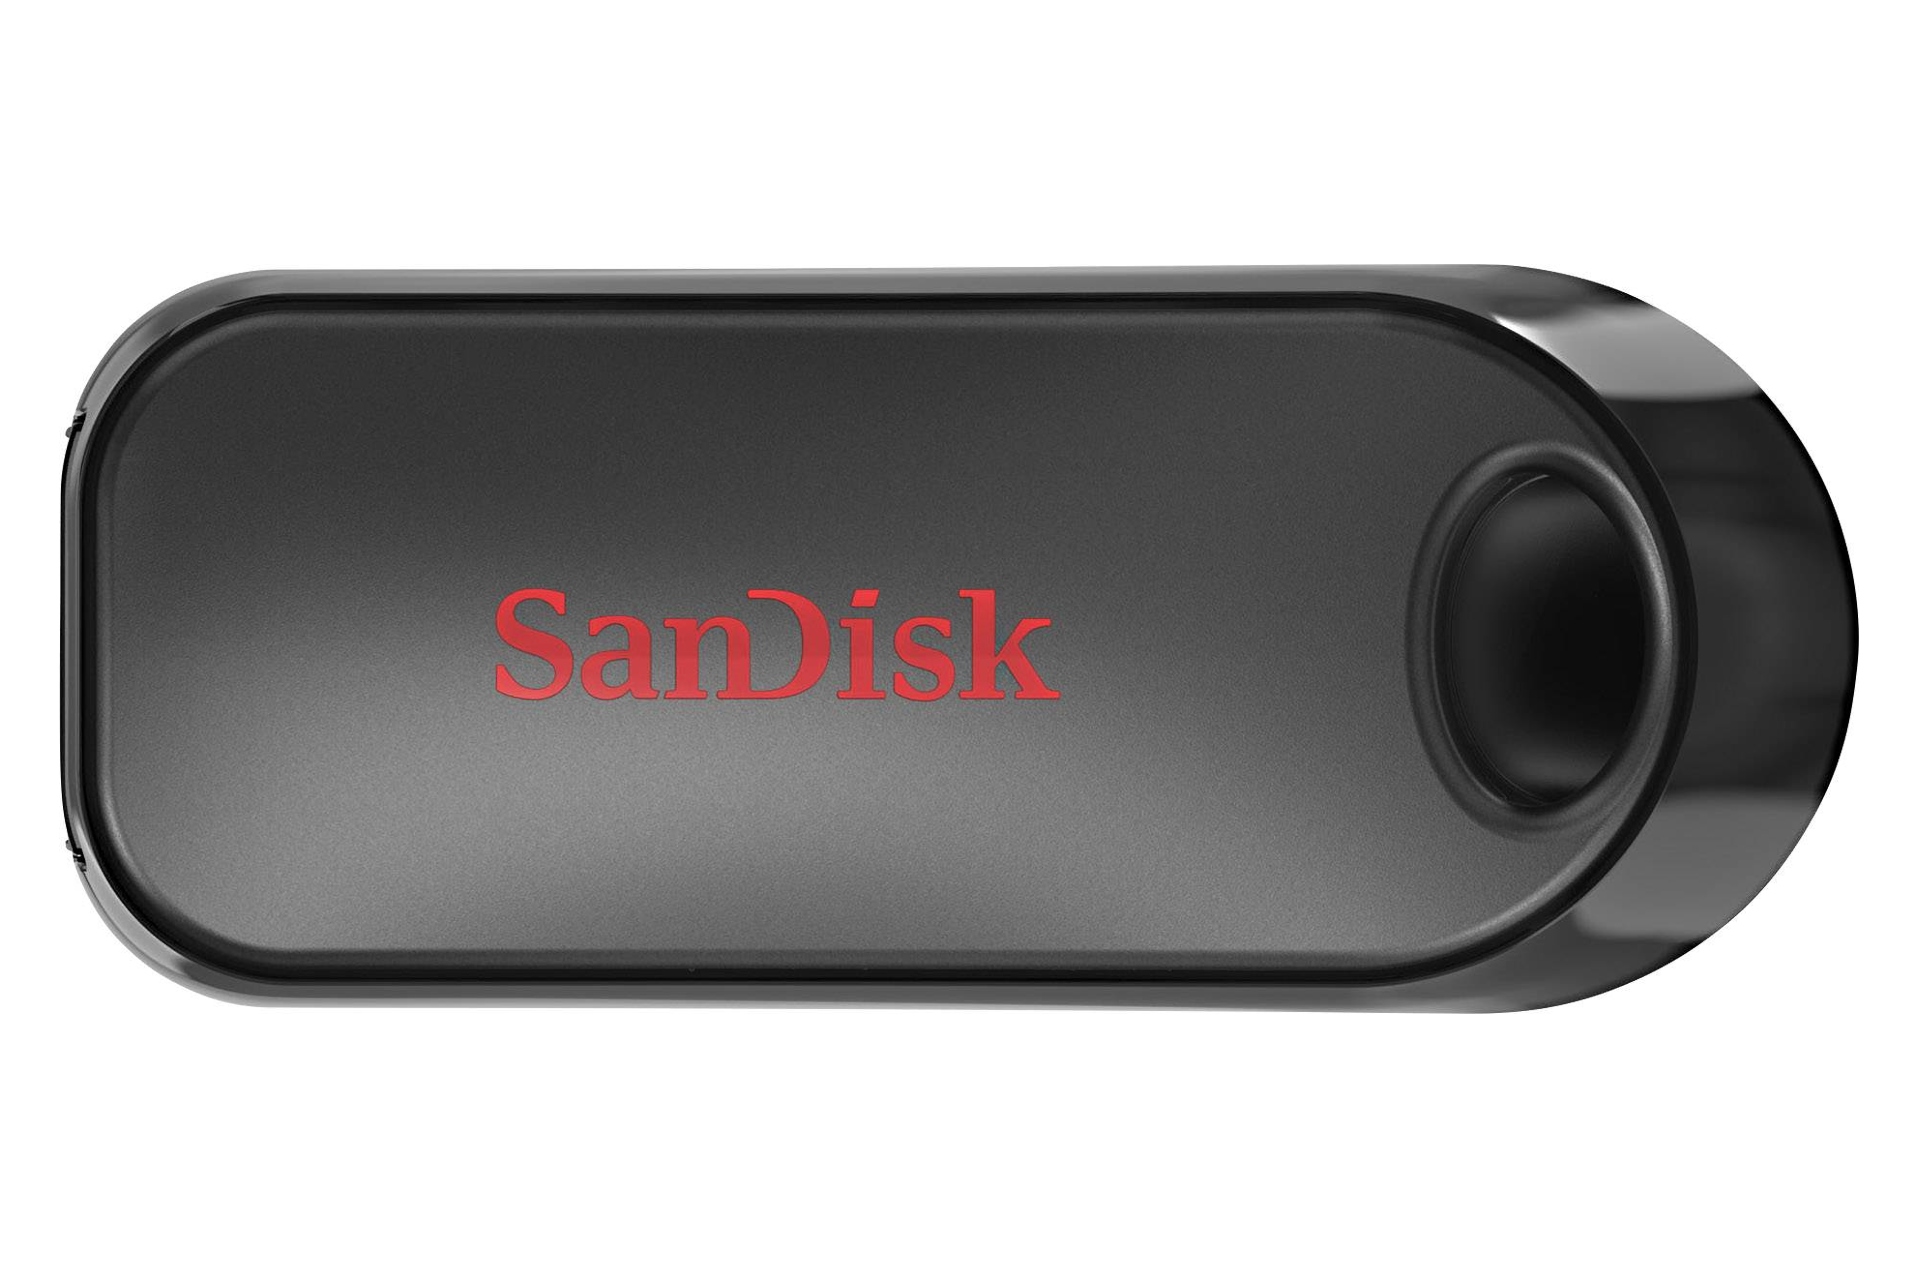 نمای روبرو فلش مموری سن دیسک مدل SanDisk Cruzer Snap SDCZ62 در پوشش